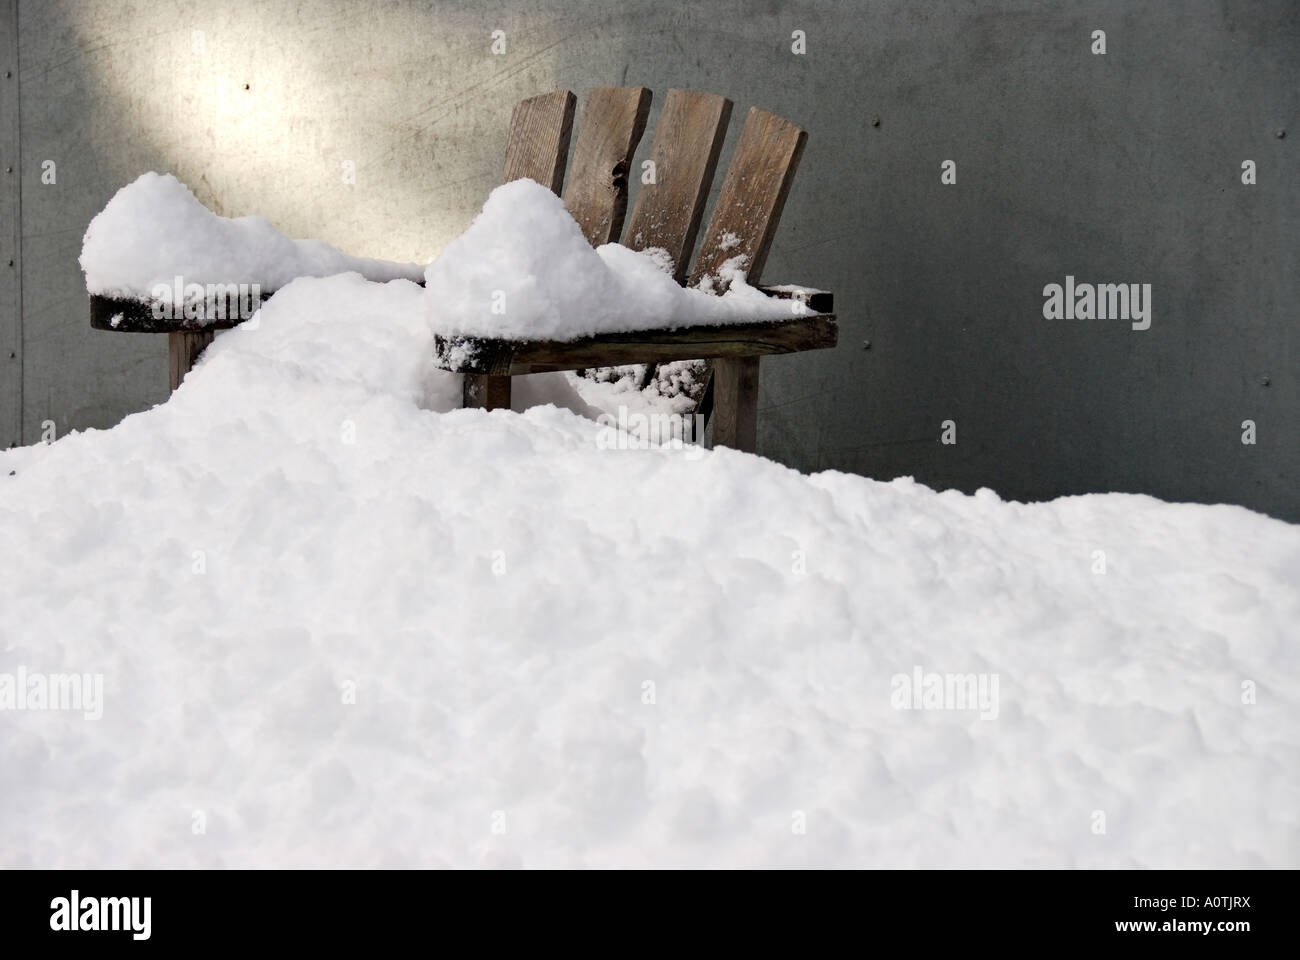 "Adirondack Stil Stuhl in Schnee bedeckt, außerhalb einer Scheune" Stockfoto